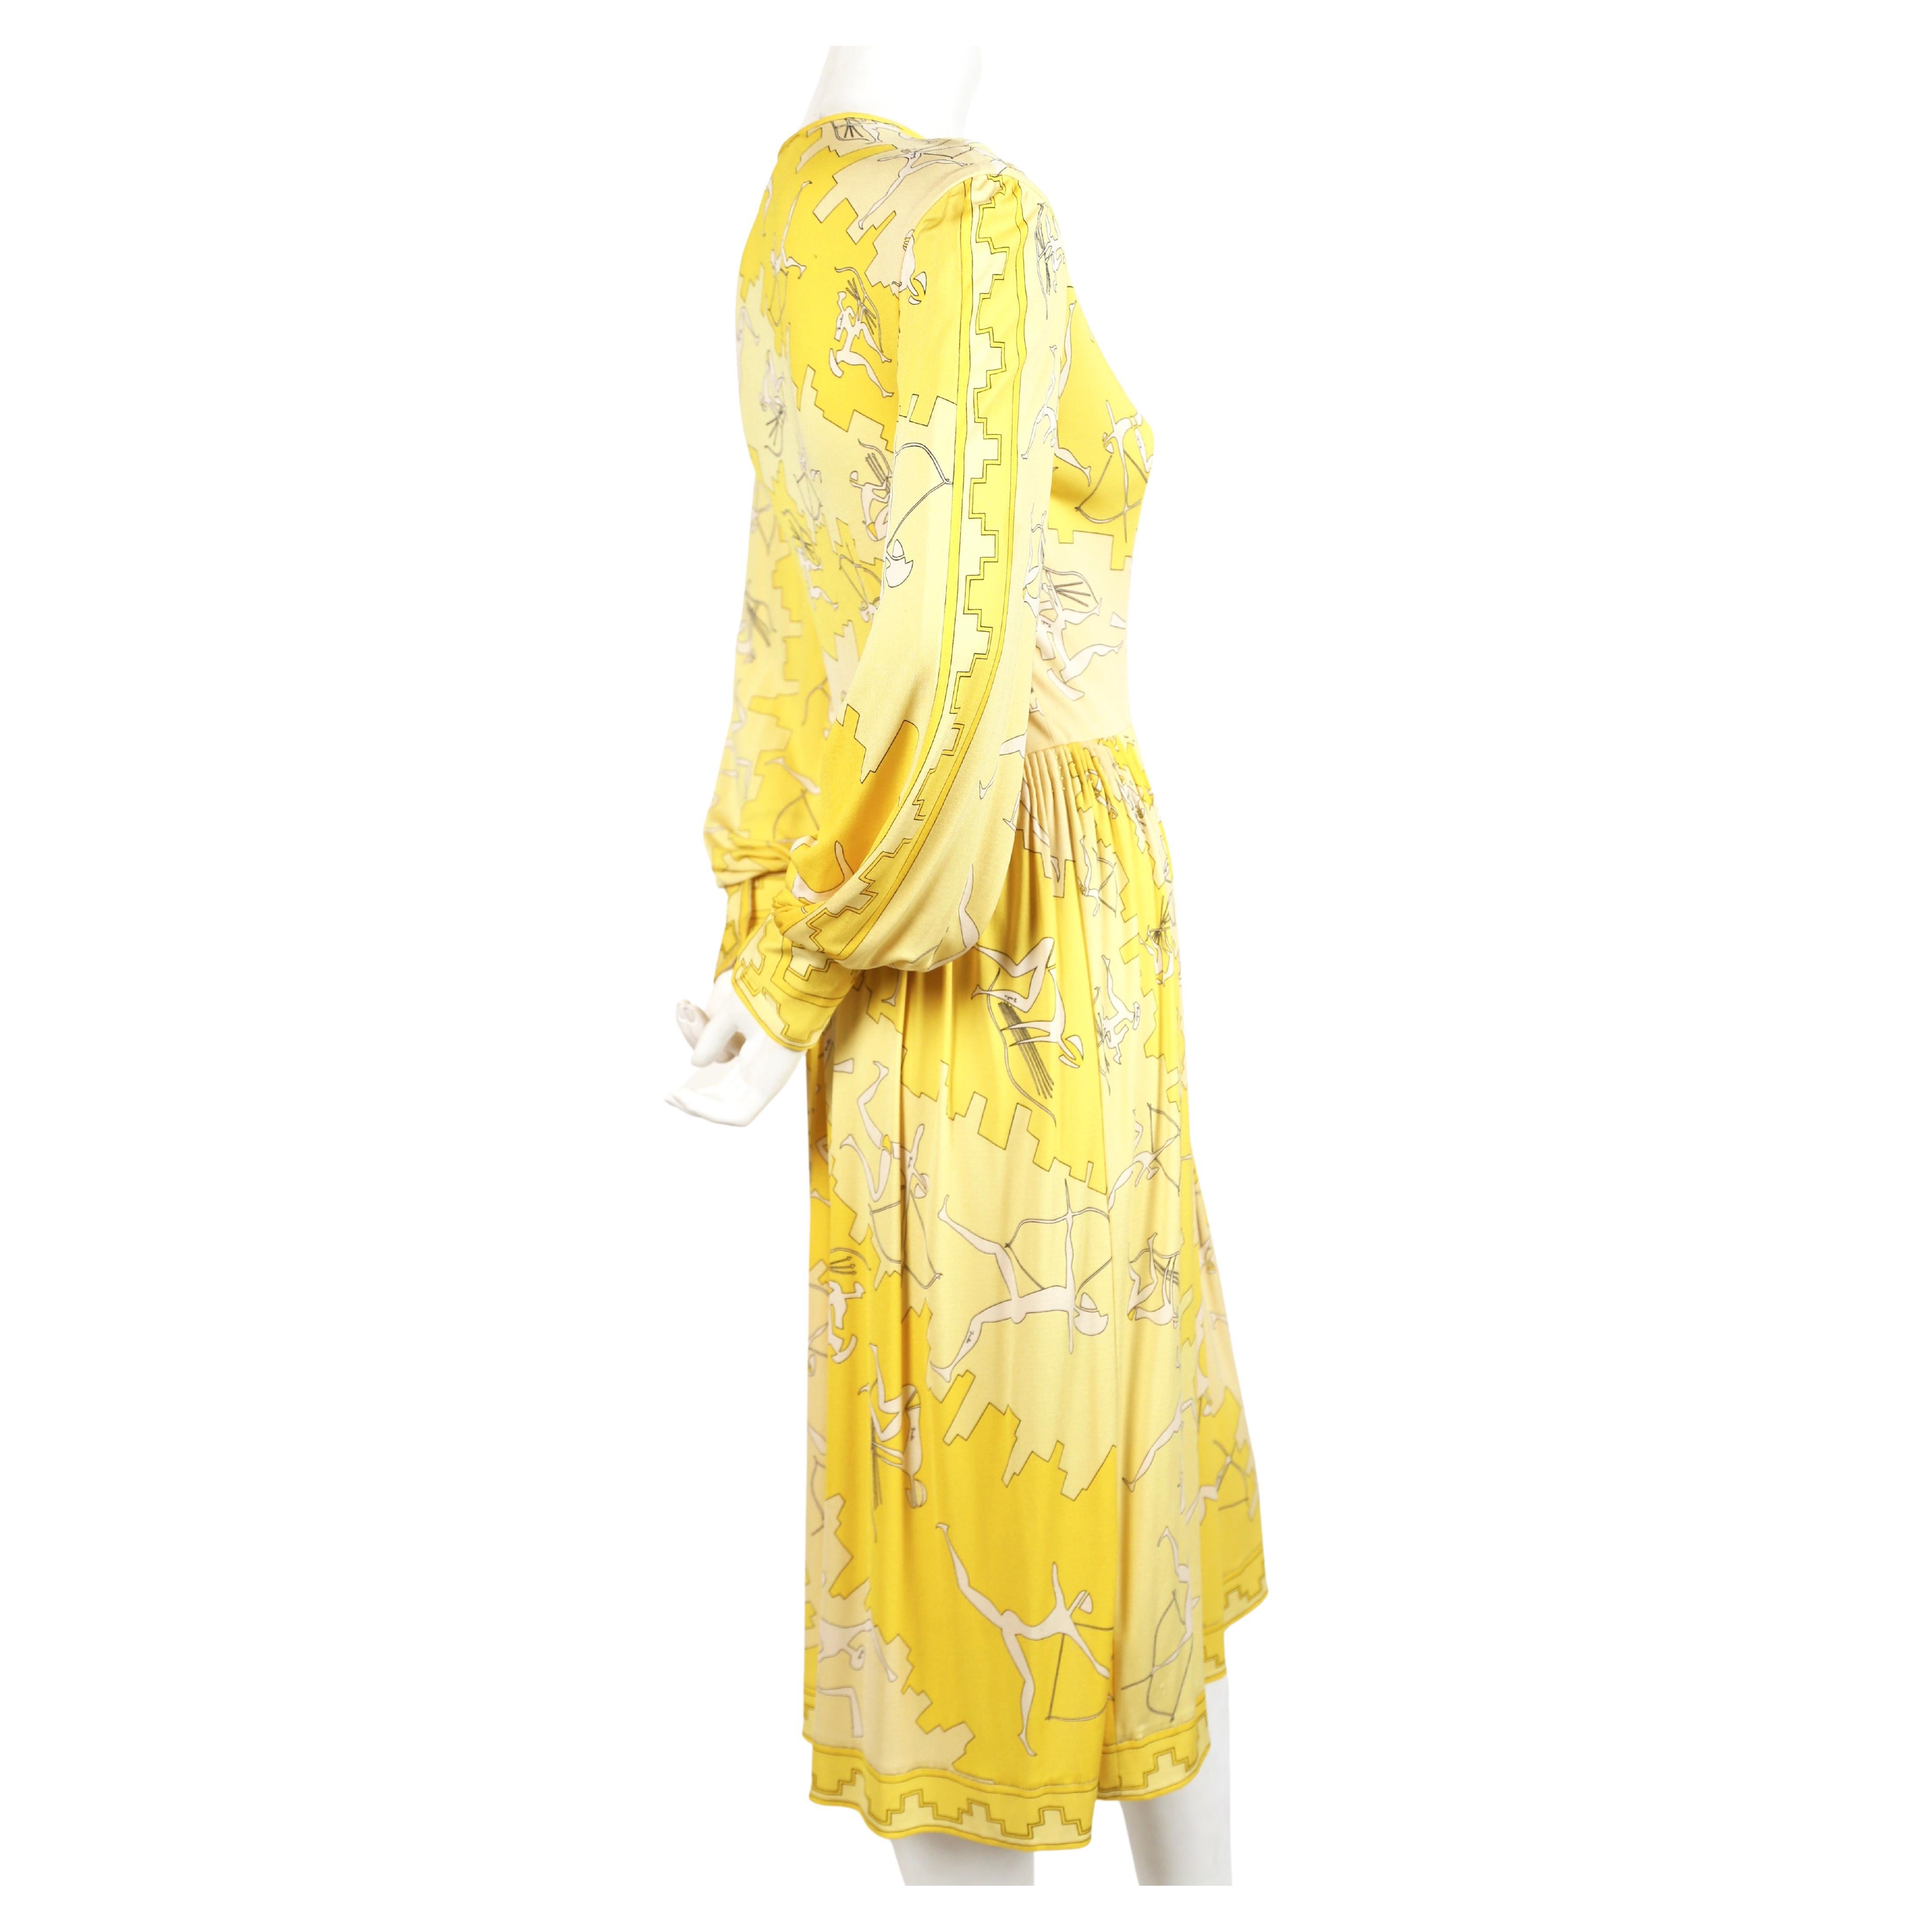 Leuchtend gelbes Kleid aus Seidenjersey mit skurrilem Bogenschützen-Print und handgestickten und handgefalteten Details, entworfen von Emilio Pucci in den 1970er Jahren. Passt einer US 4 oder 6. Ungefähre Maße: Schultern 15,5